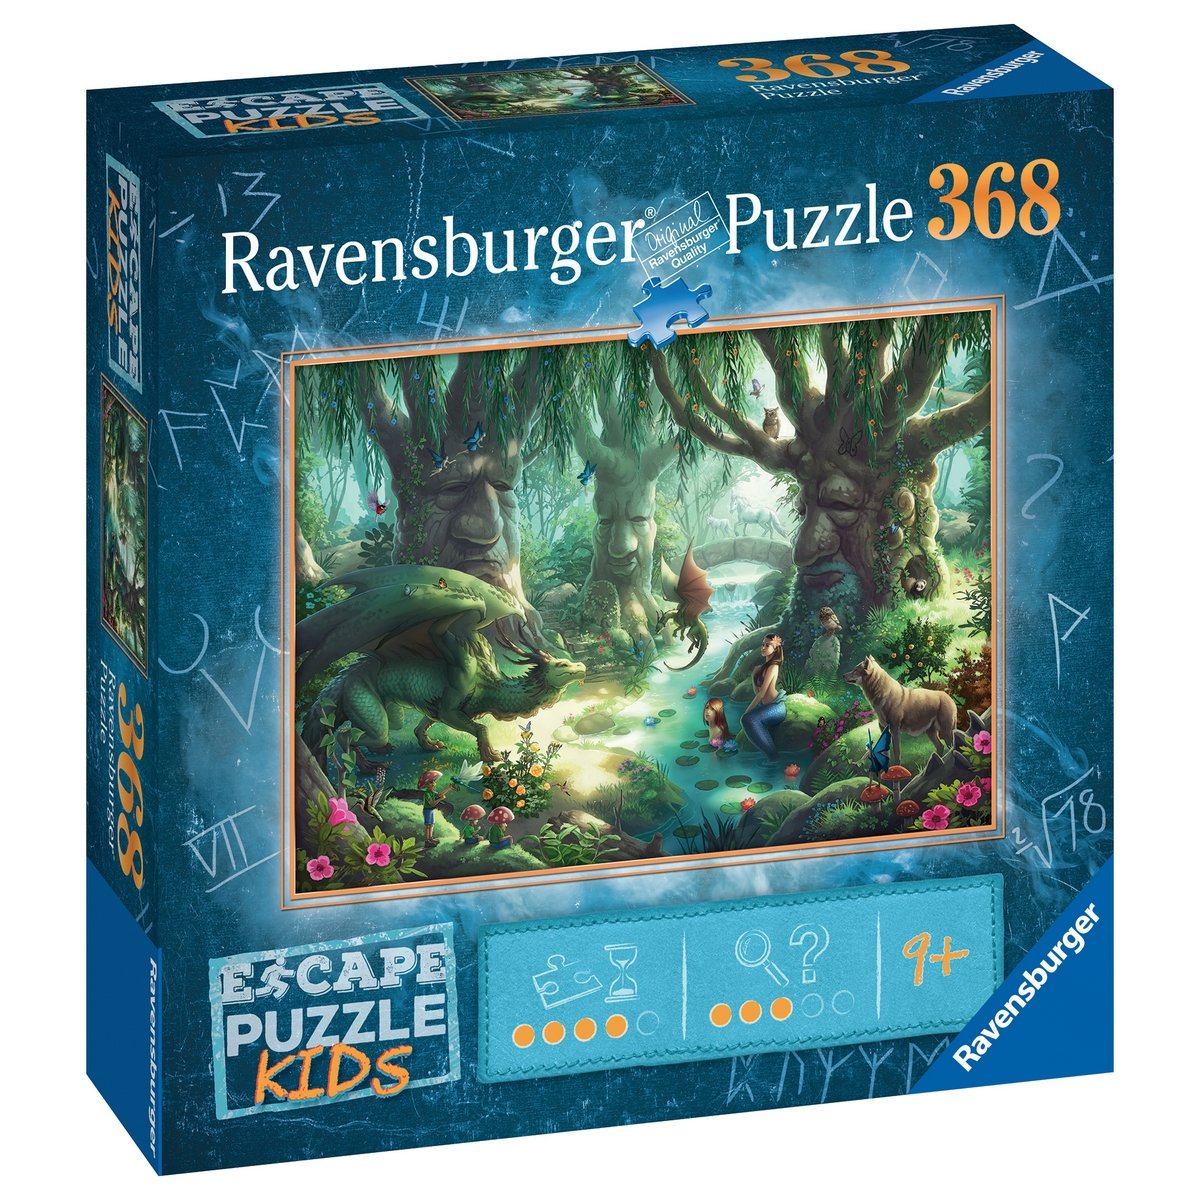 Casse-tête - Ravensburger - 368 pcs - Escape Puzzle: Dans la Serre